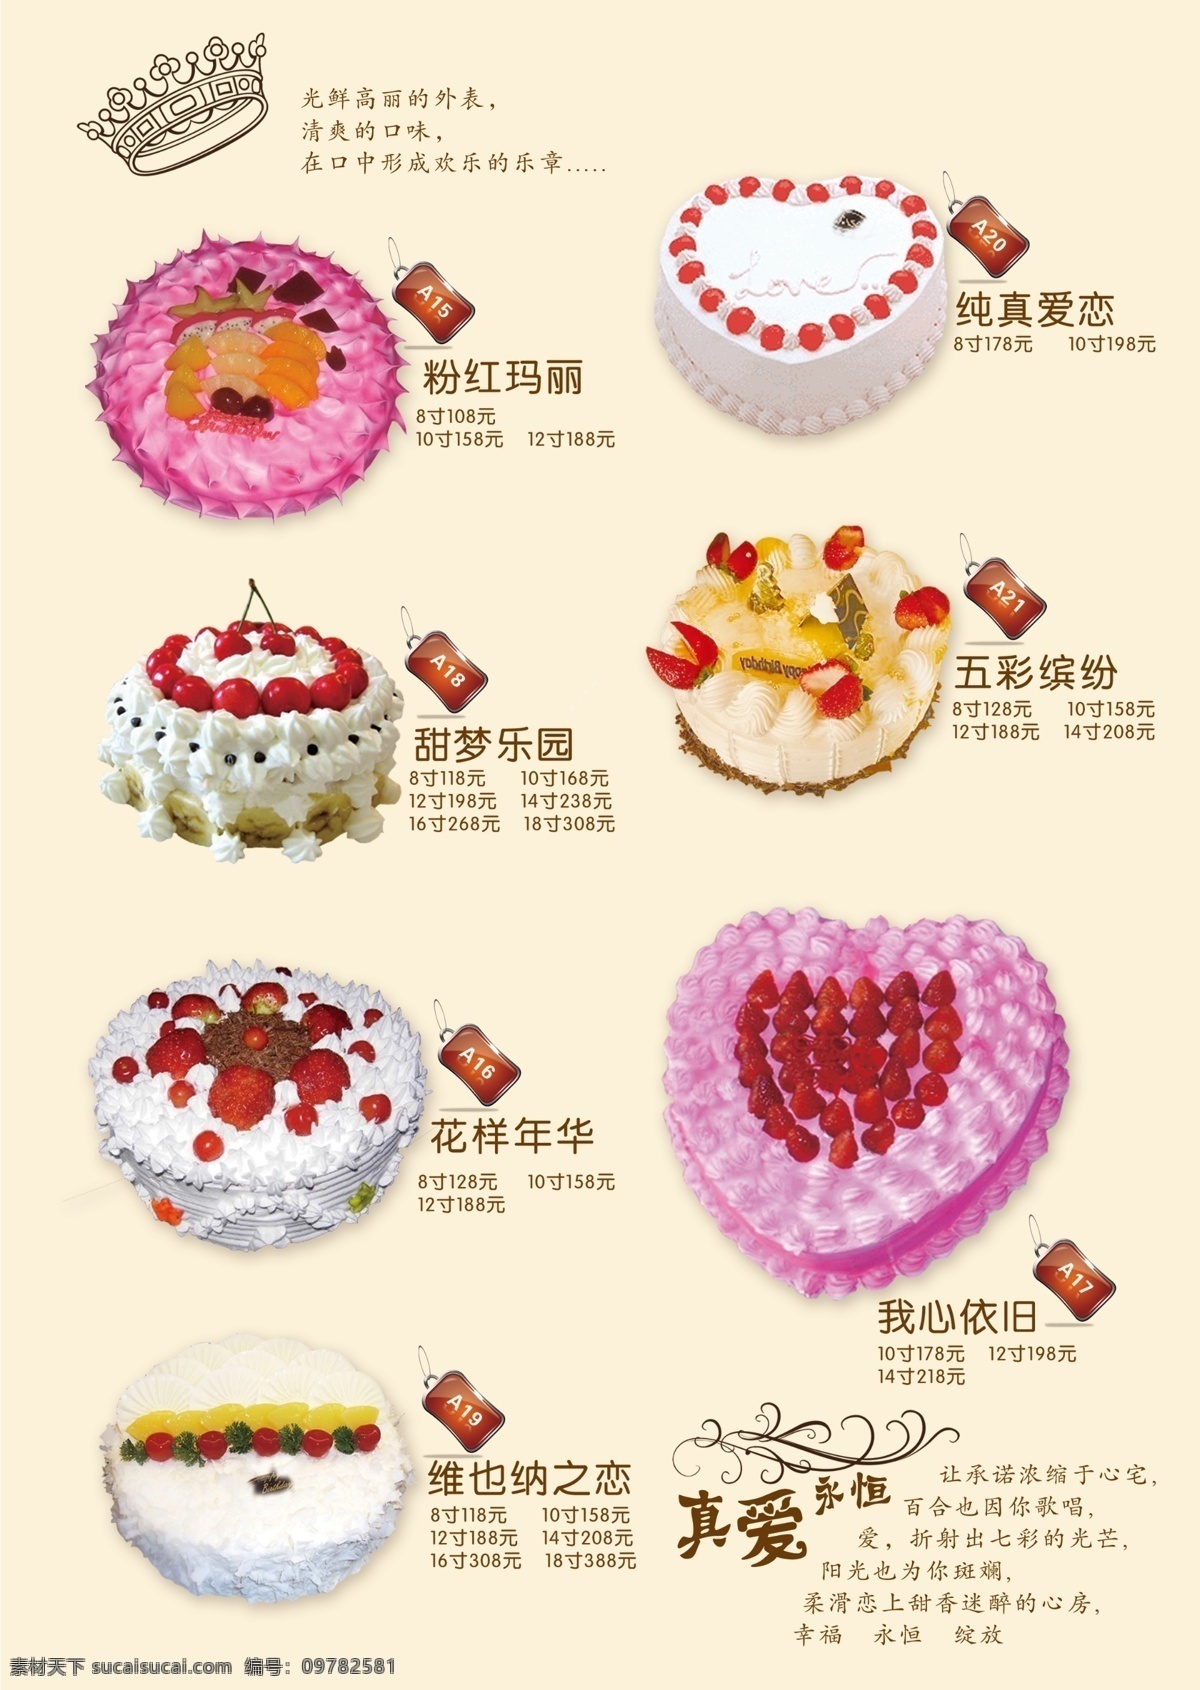 蛋糕海报 蛋糕 蛋糕展板 蛋糕图片 烘焙坊 心形蛋糕 圆形蛋糕 水果蛋糕 粉色蛋糕